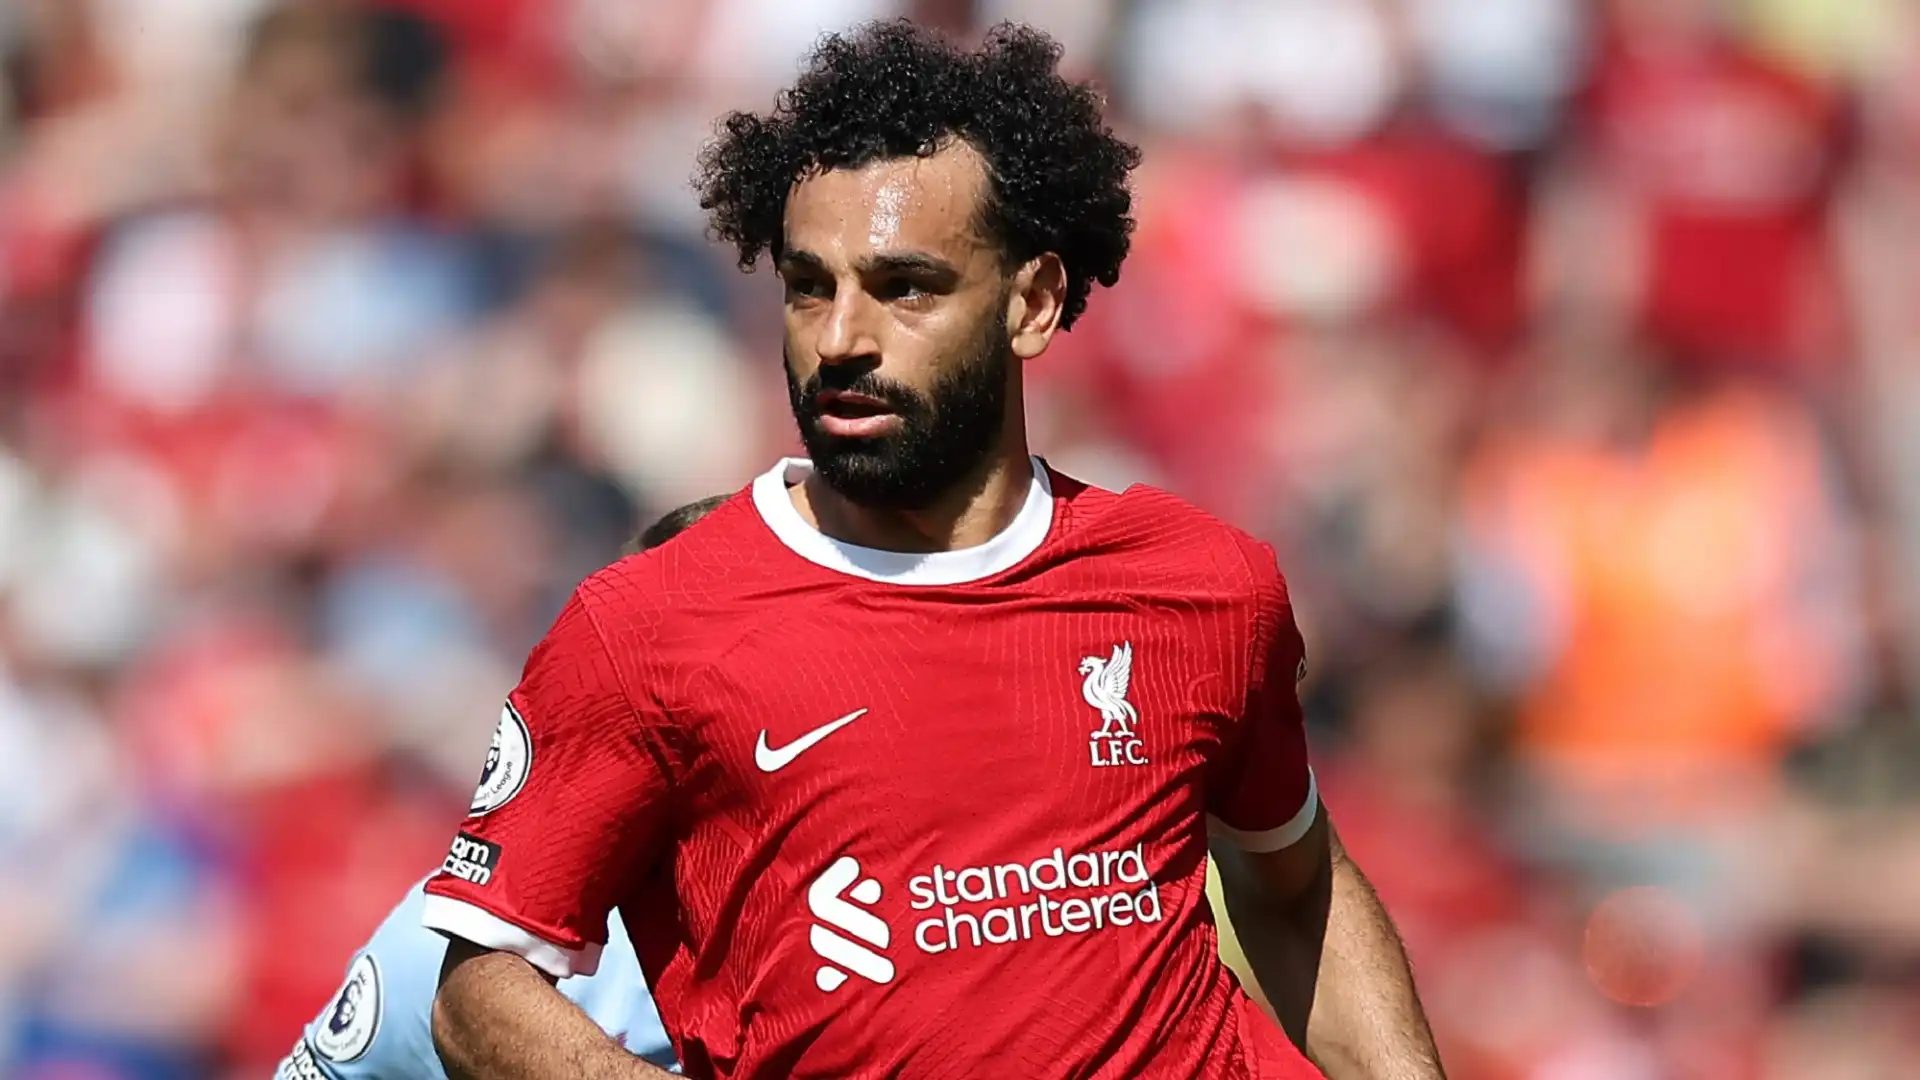 2 Mohamed Salah	(Attaccante, Egitto, Liverpool): 70 milioni di euro